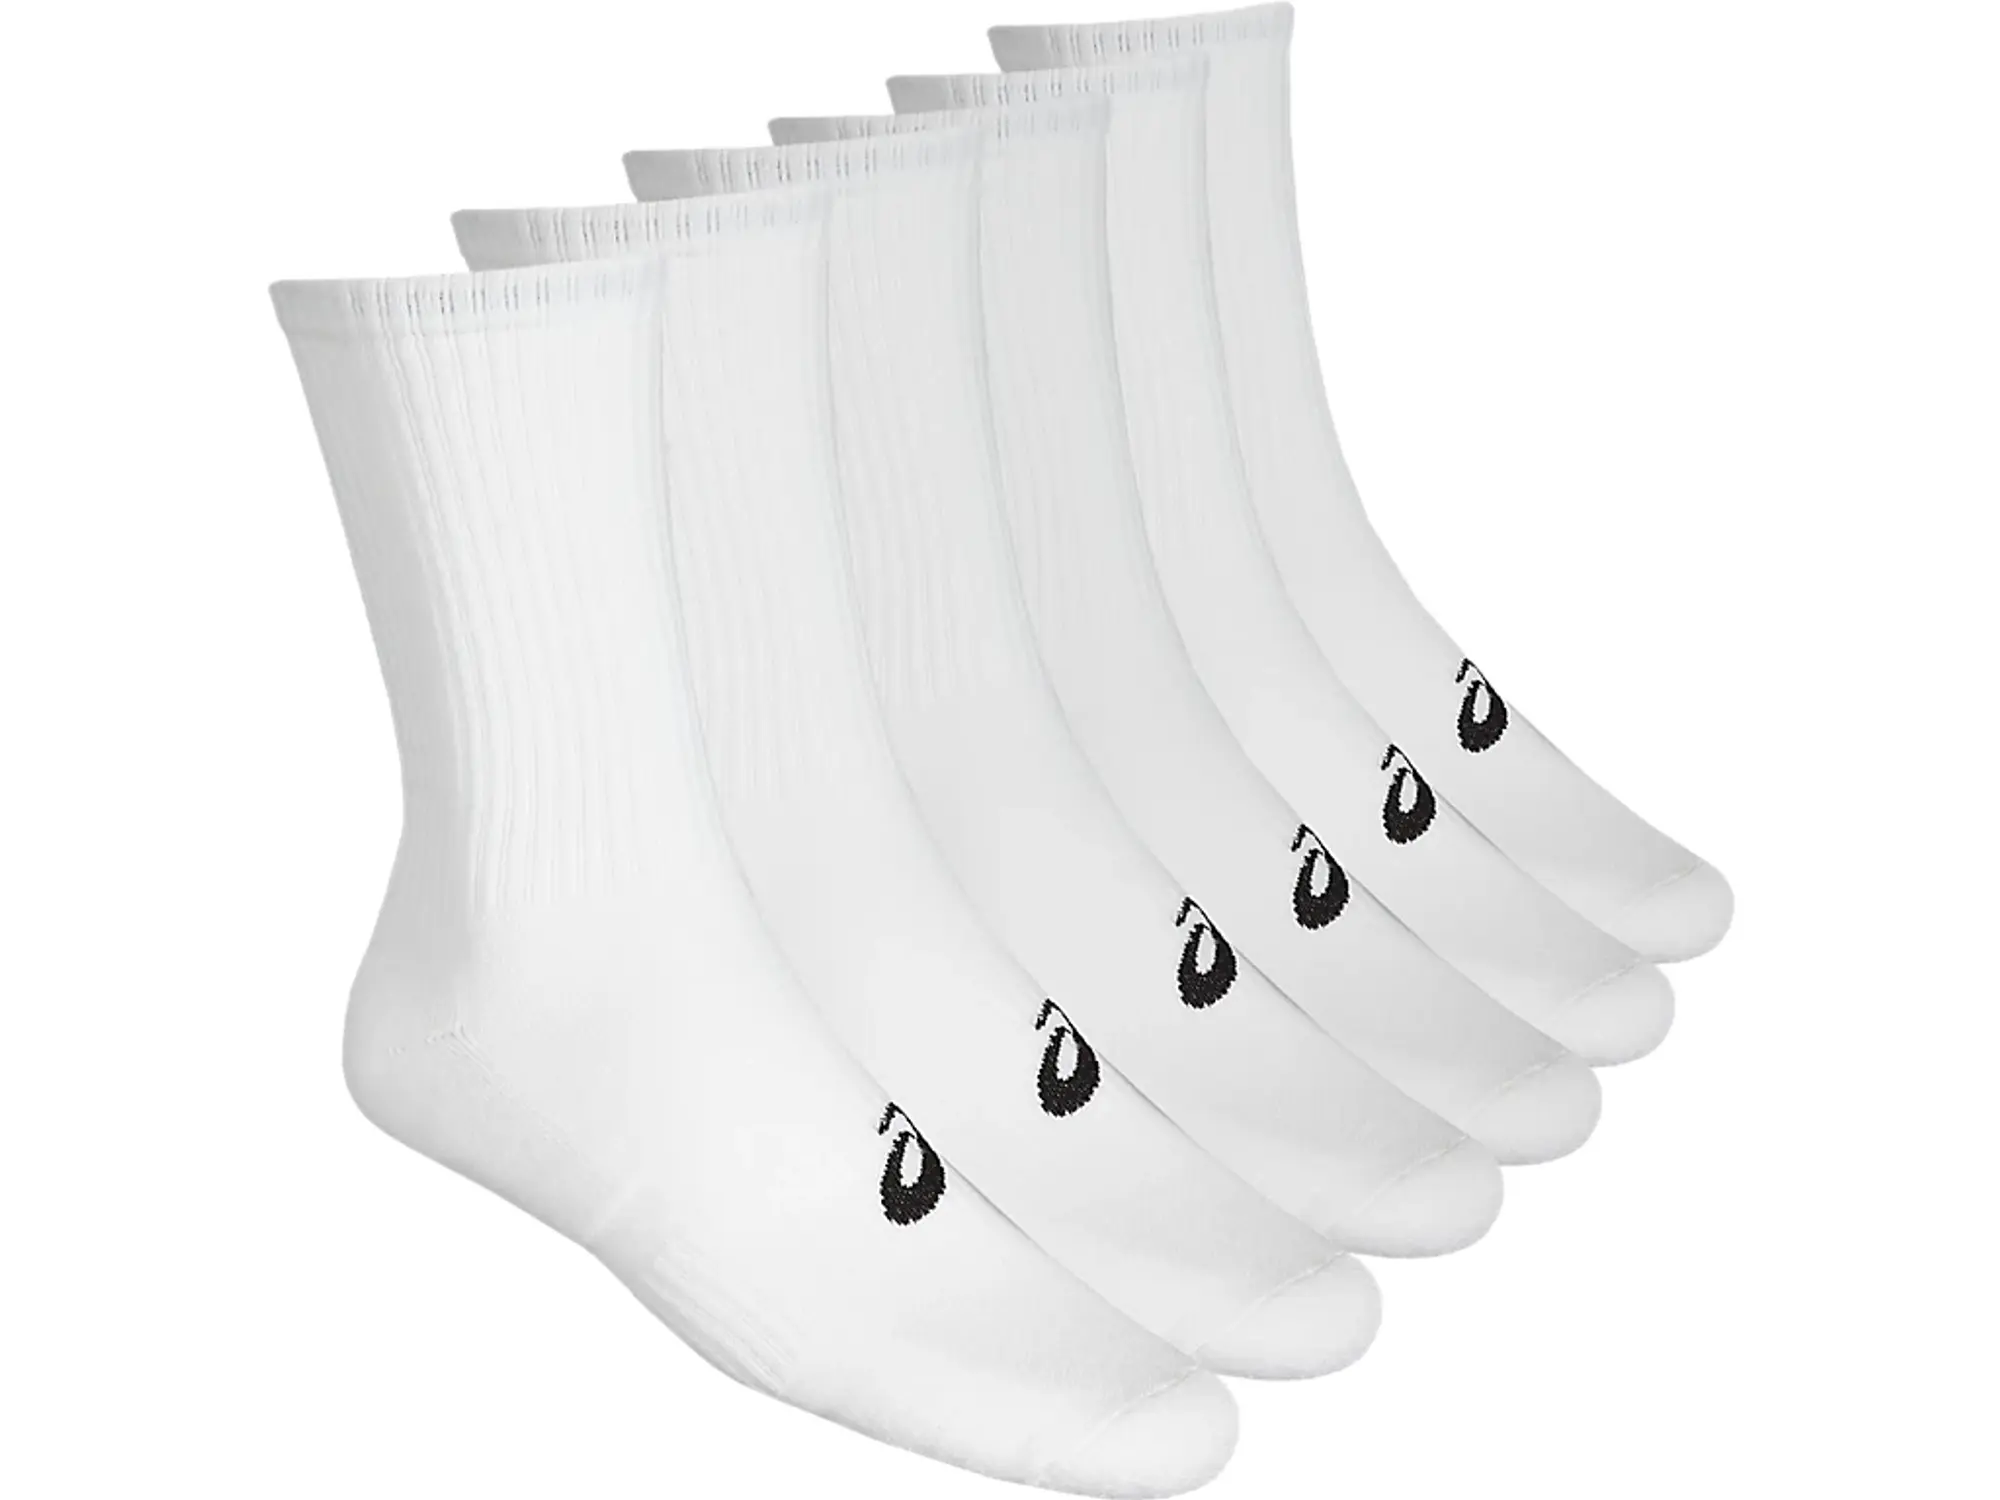 ASICS Crew Sports Socks 6 Pack - White, Black